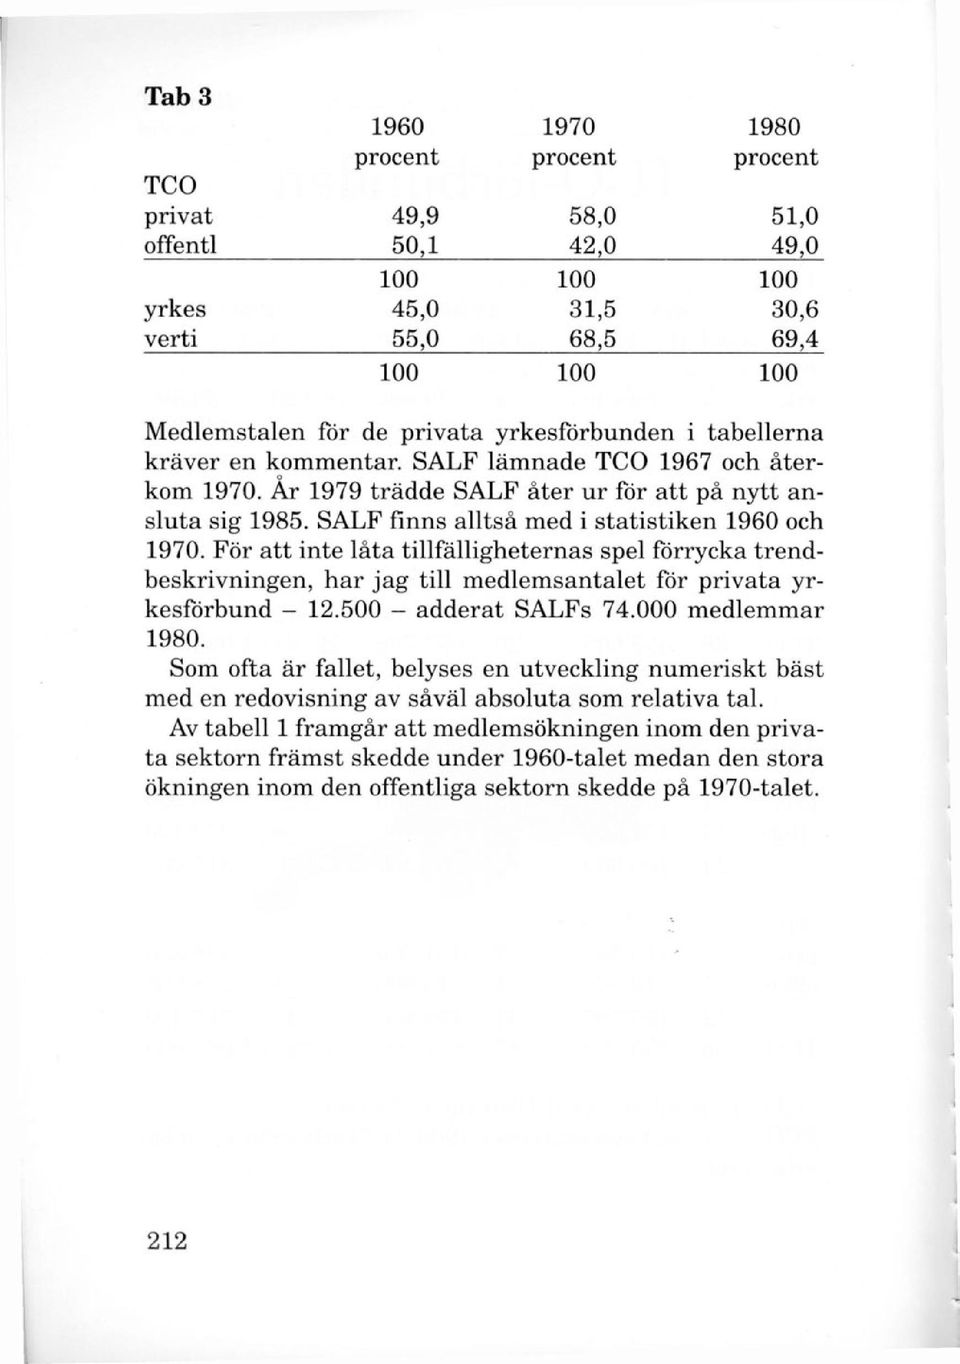 SALF finns alltså med i statistiken 1960 och 1970. För att inte låta tillfälligheternas spel förrycka trendbeskrivningen, har jag till medlemsantalet för privata yrkesförbund - 12.